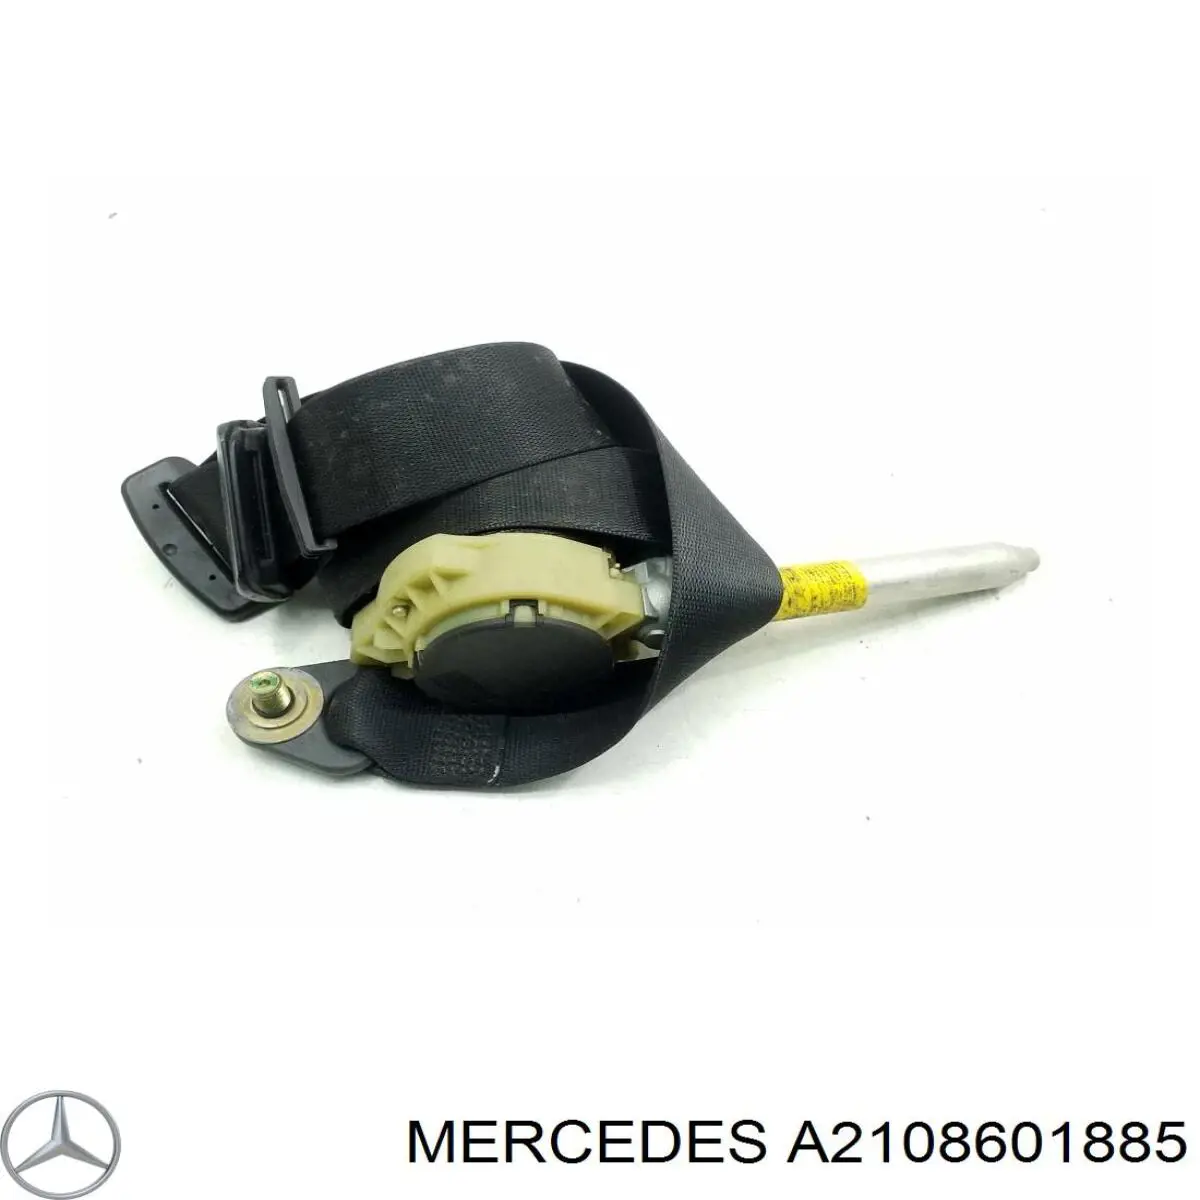 A2108601885 Mercedes ремень безопасности передний правый